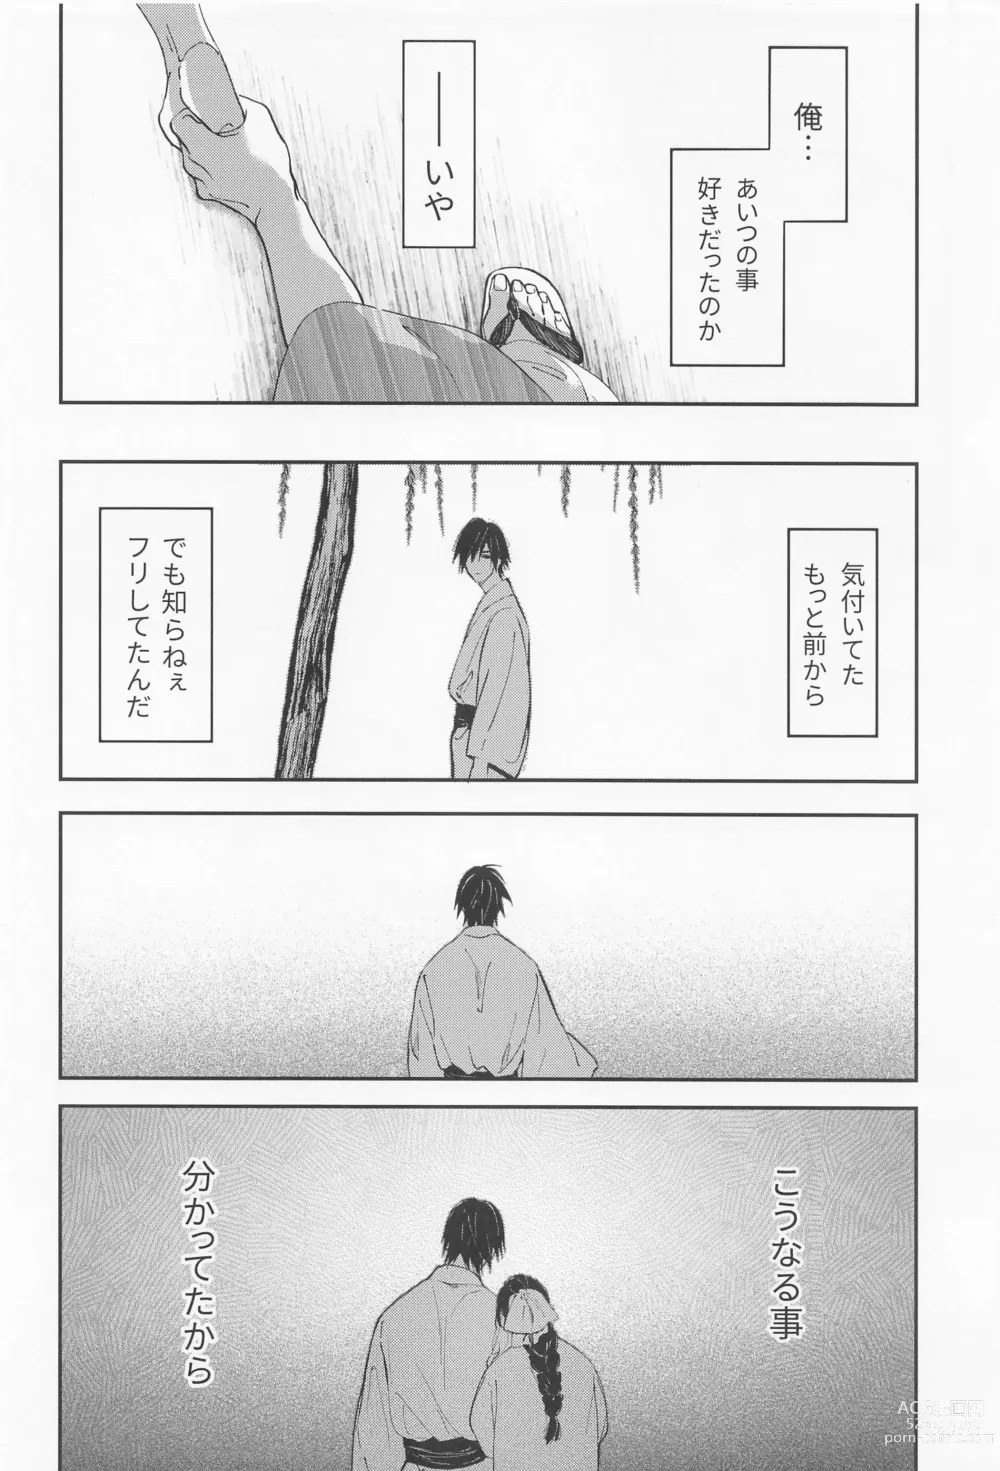 Page 55 of doujinshi Utakata  First volume